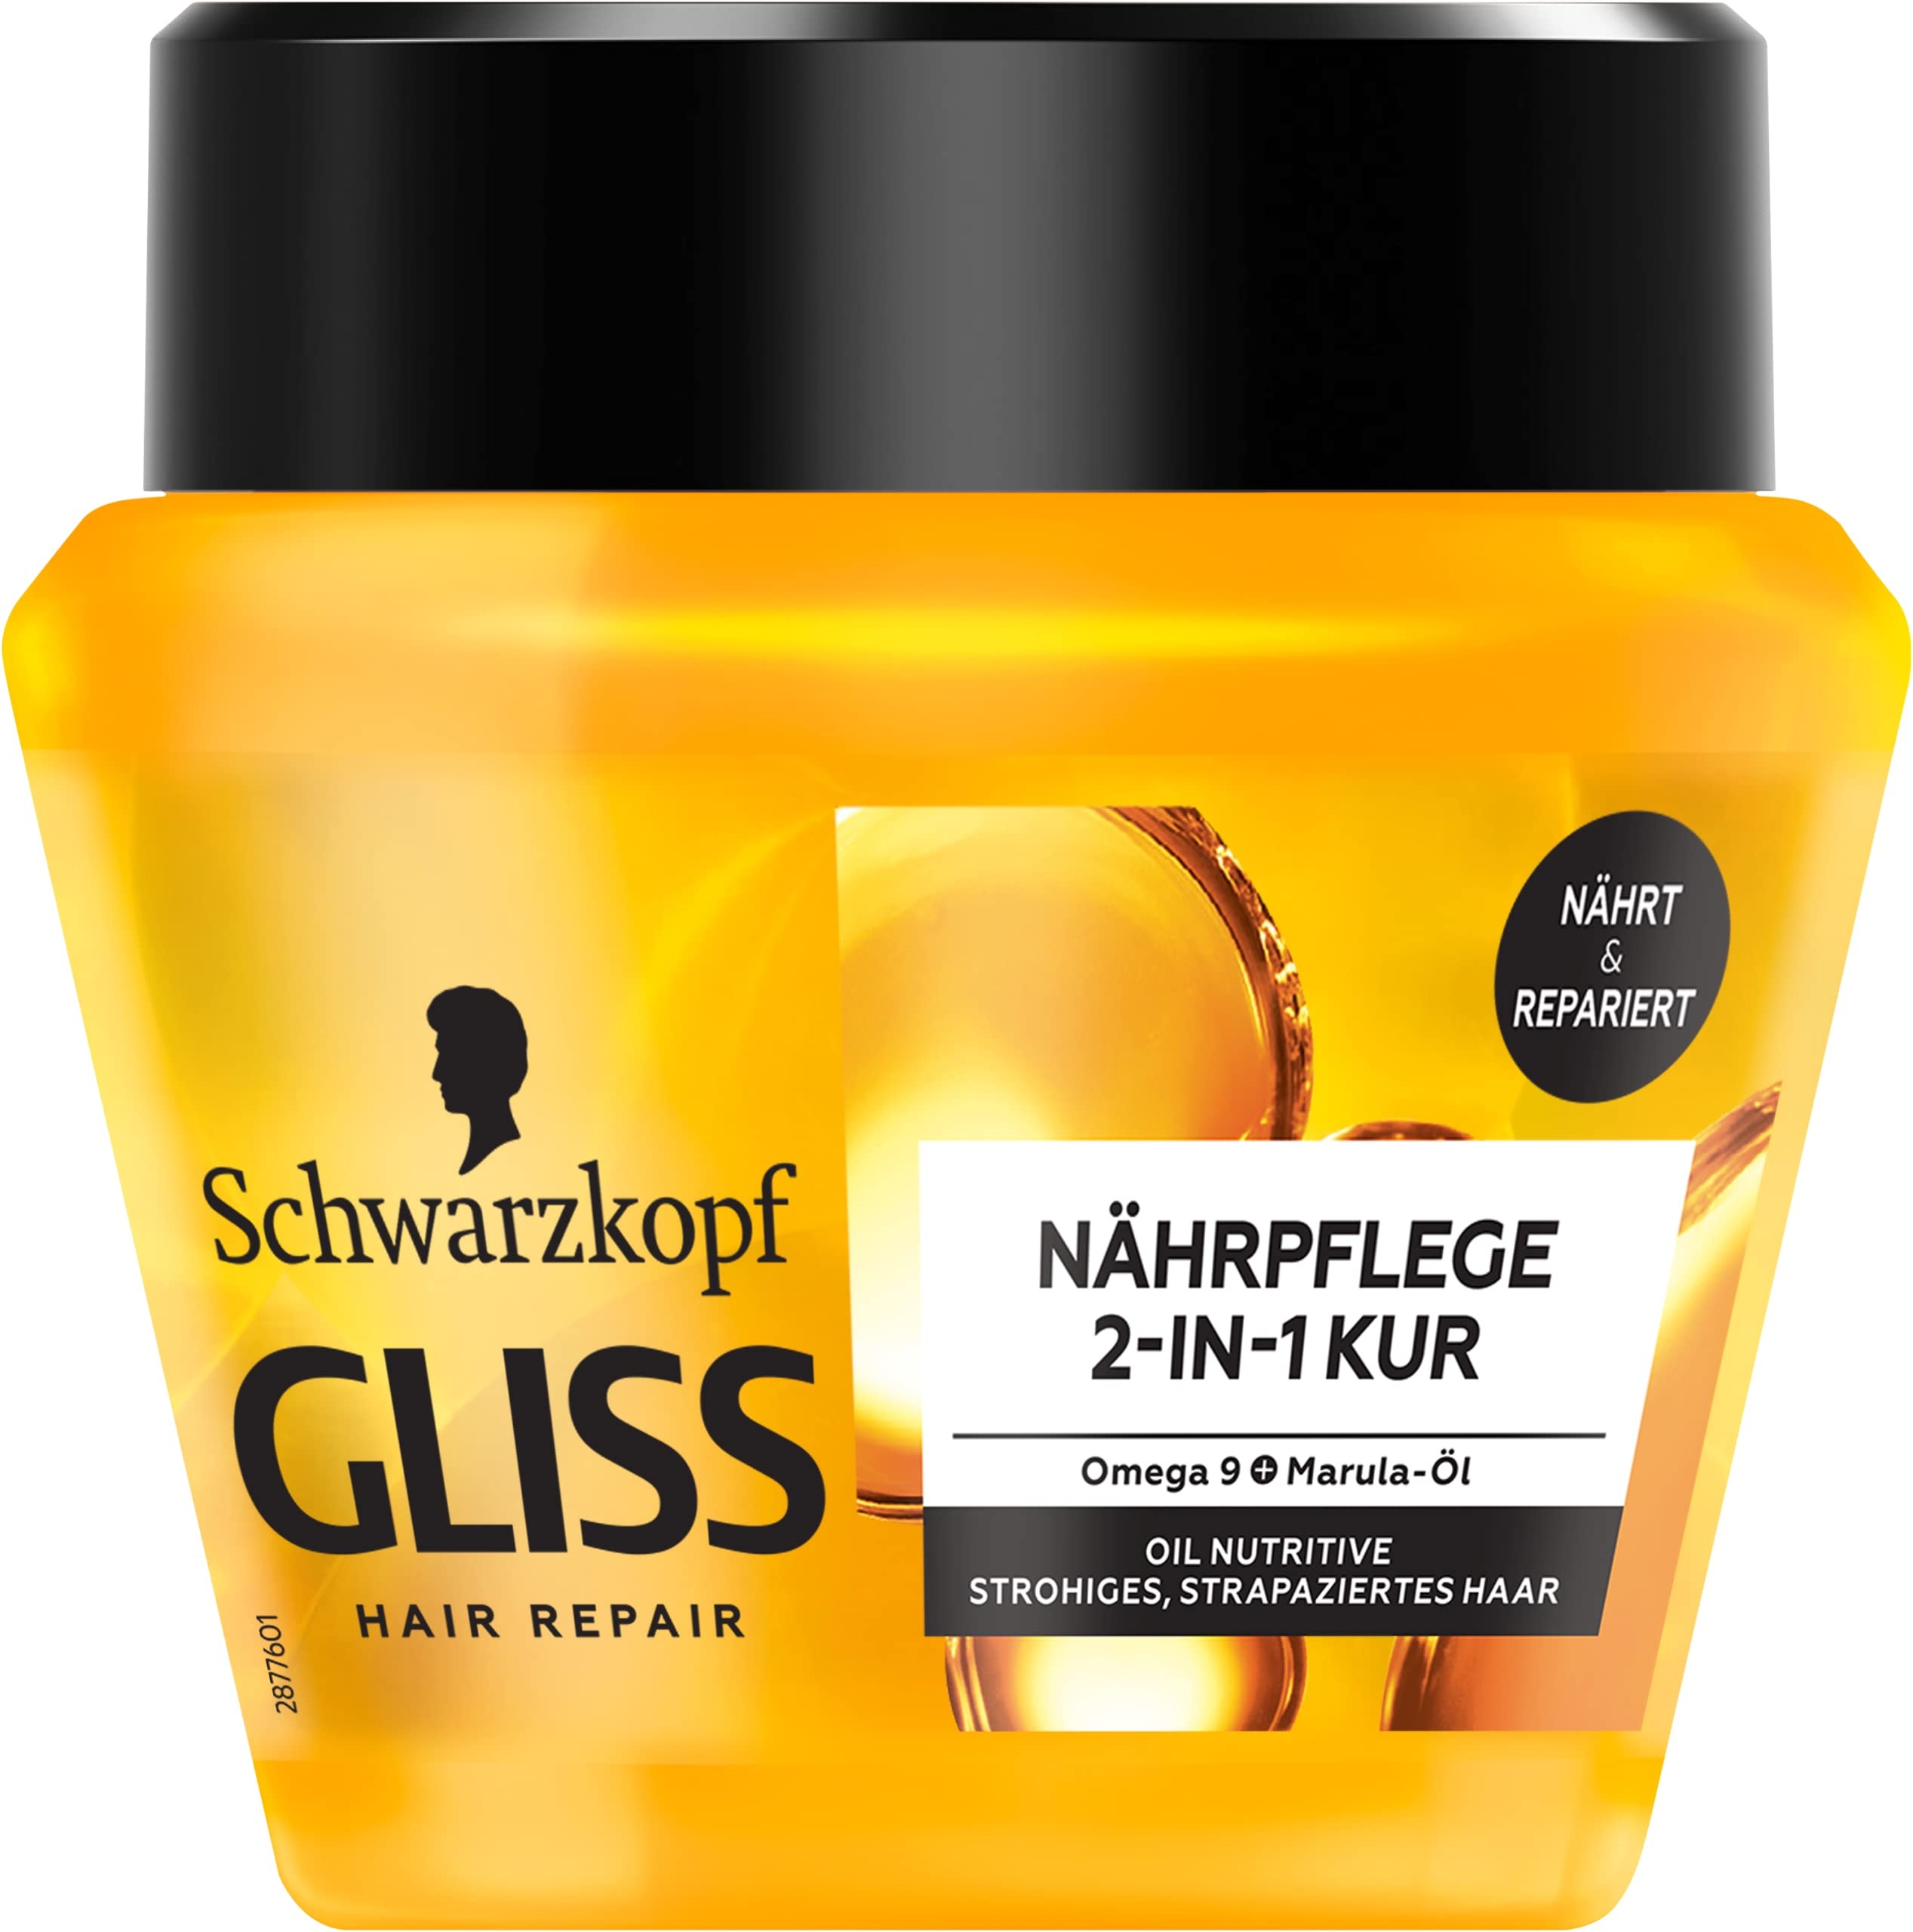 Gliss 2-in-1 Nährpflege Kur Oil Nutritive (300 ml), Haarkur nährt strohiges, strapaziertes Haar, Haarmaske sorgt für sinnliche Geschmeidigkeit